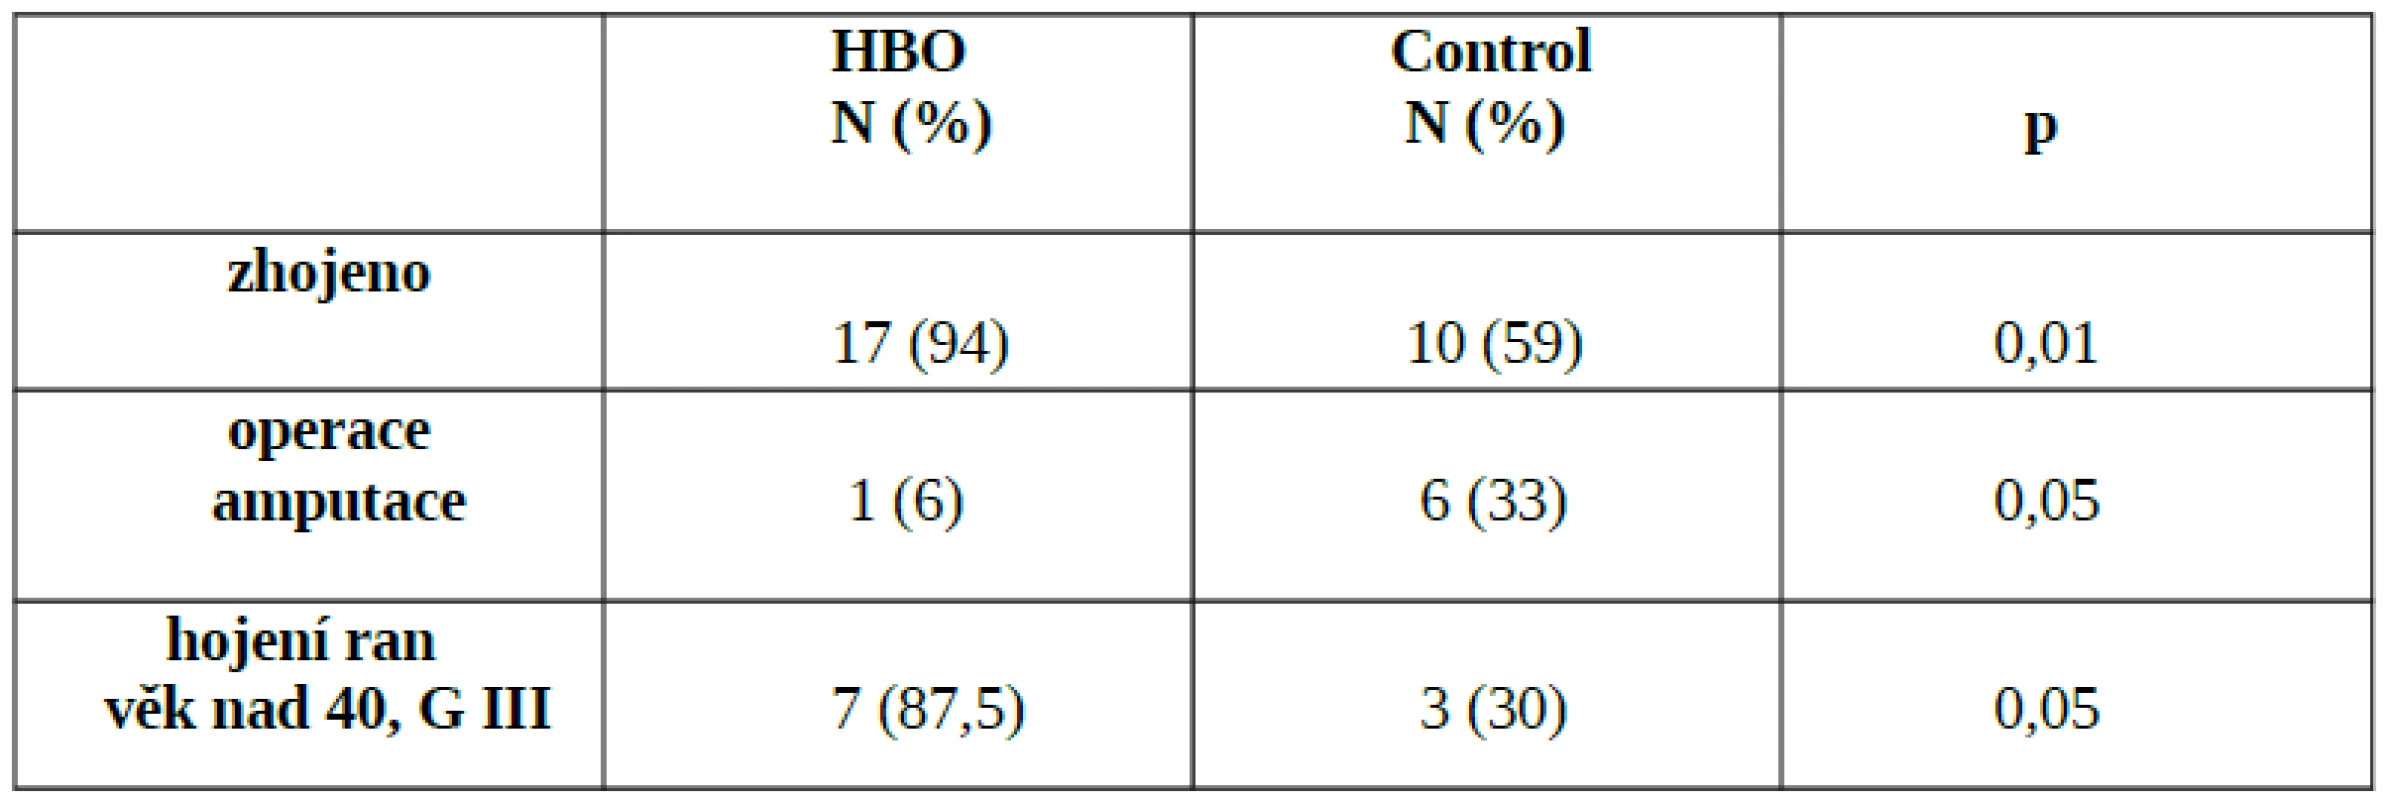 Efekt HBO ve srovnání s kontrolní skupinou - signifikantní rozdíl v počtu zhojených, redukci operací a zlepšeném hojení ran u pacientů nad 40 let věku (volně dle Bouachoura)